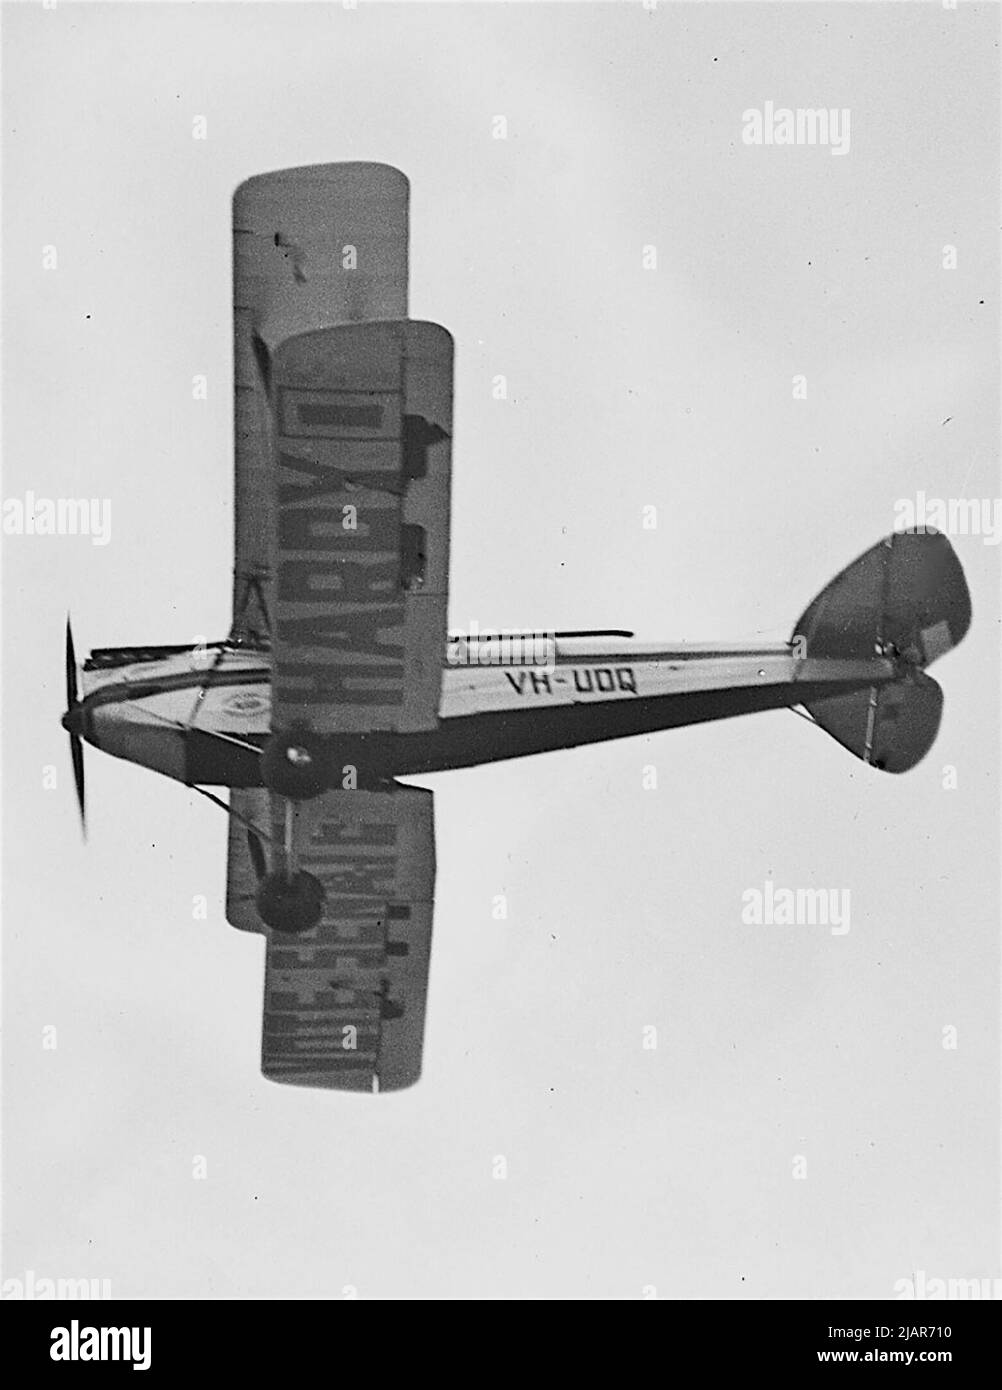 Homme politique Charles Hardy volant son avion avec vote Sénat Hardy 1 écrit sous les ailes, Nouvelle-Galles du Sud ca. 1931 Banque D'Images